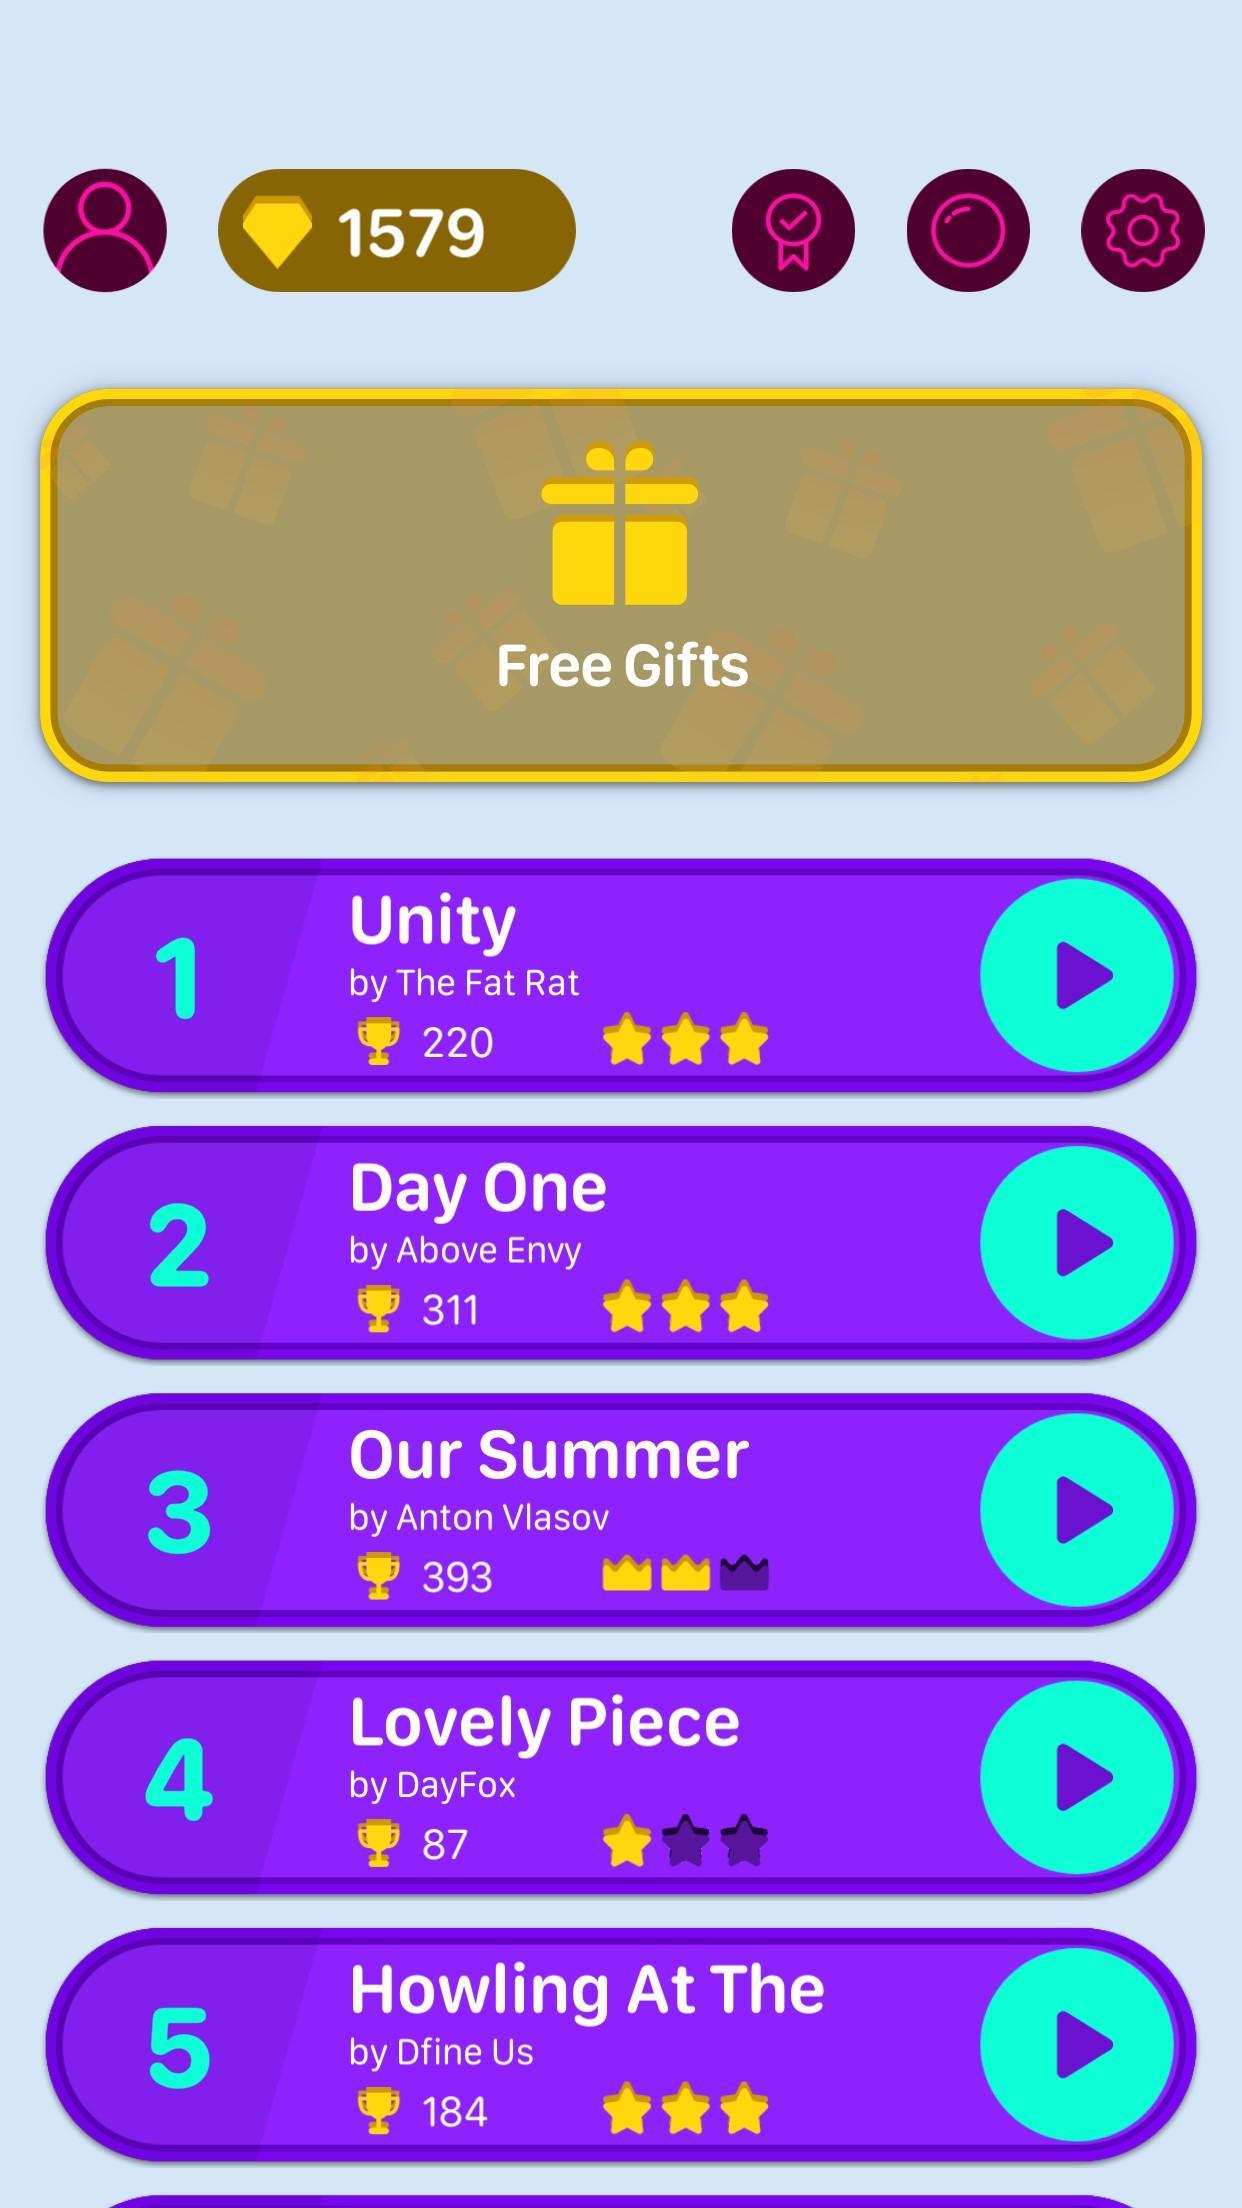 Beat Bouncing - Free Rhythm Music Game screenshot game